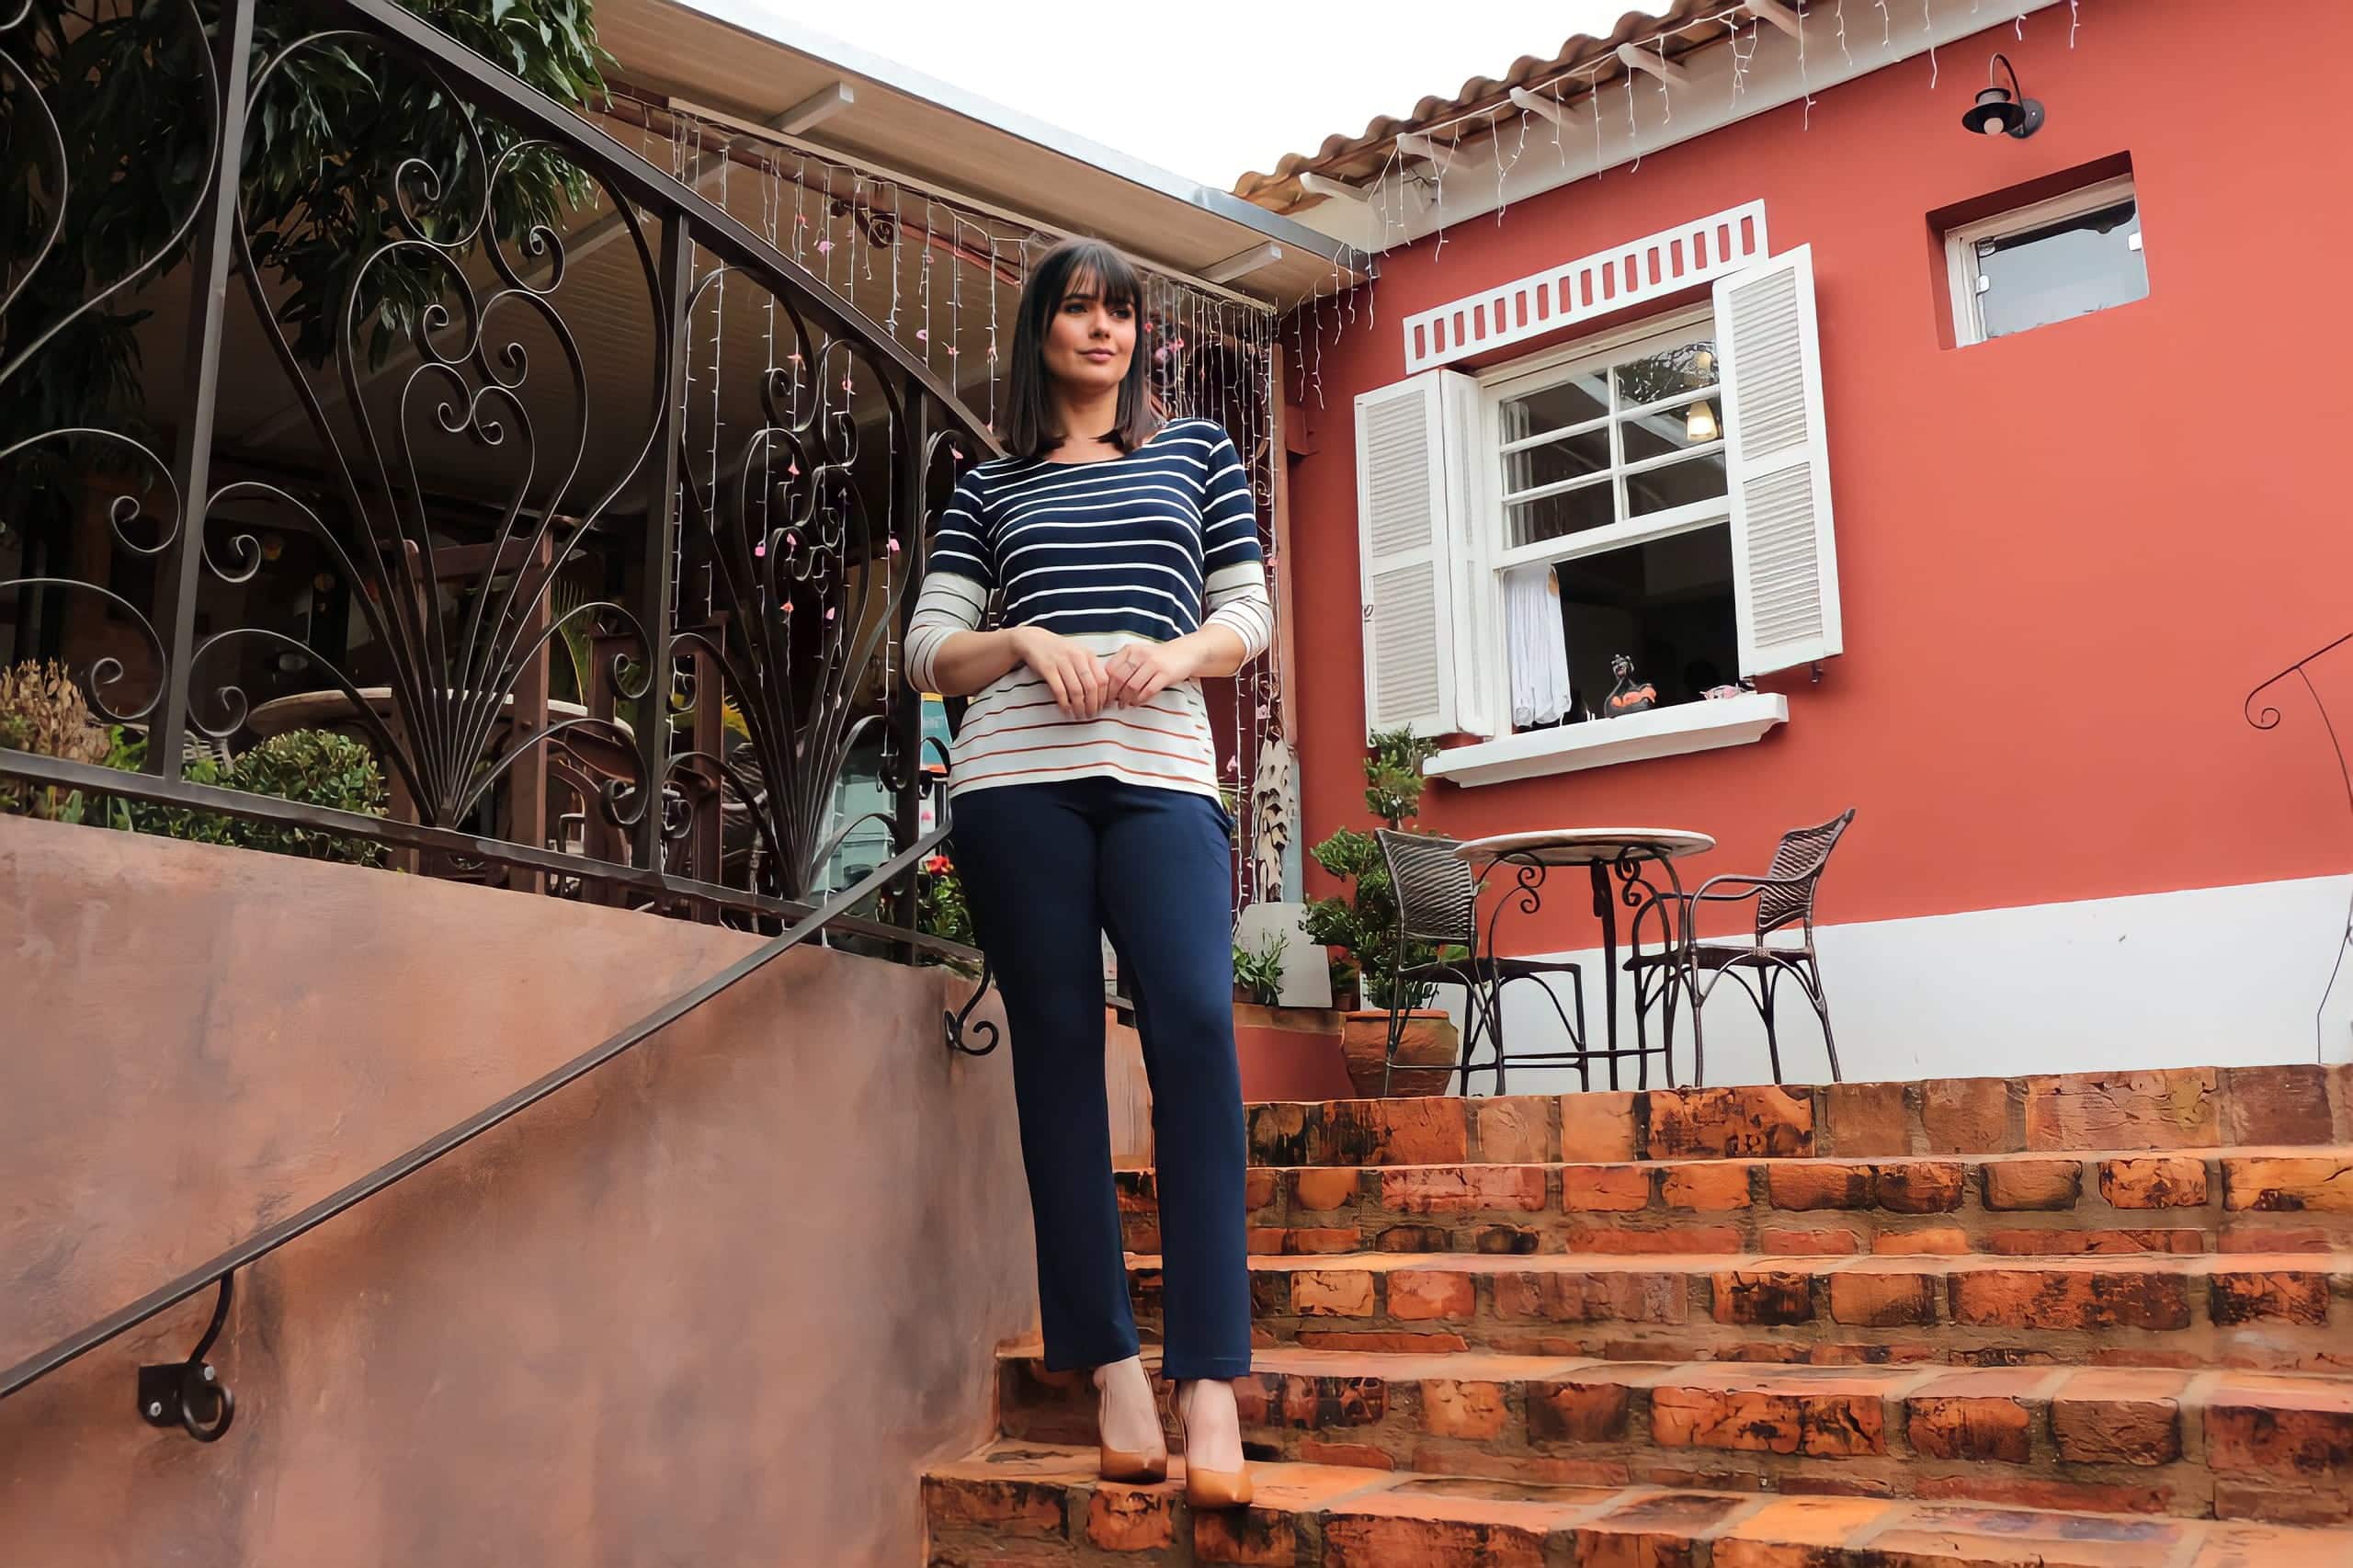 Mulher em uma casa posando para foto na escada utilizando calça escura e blusa de manga listrada